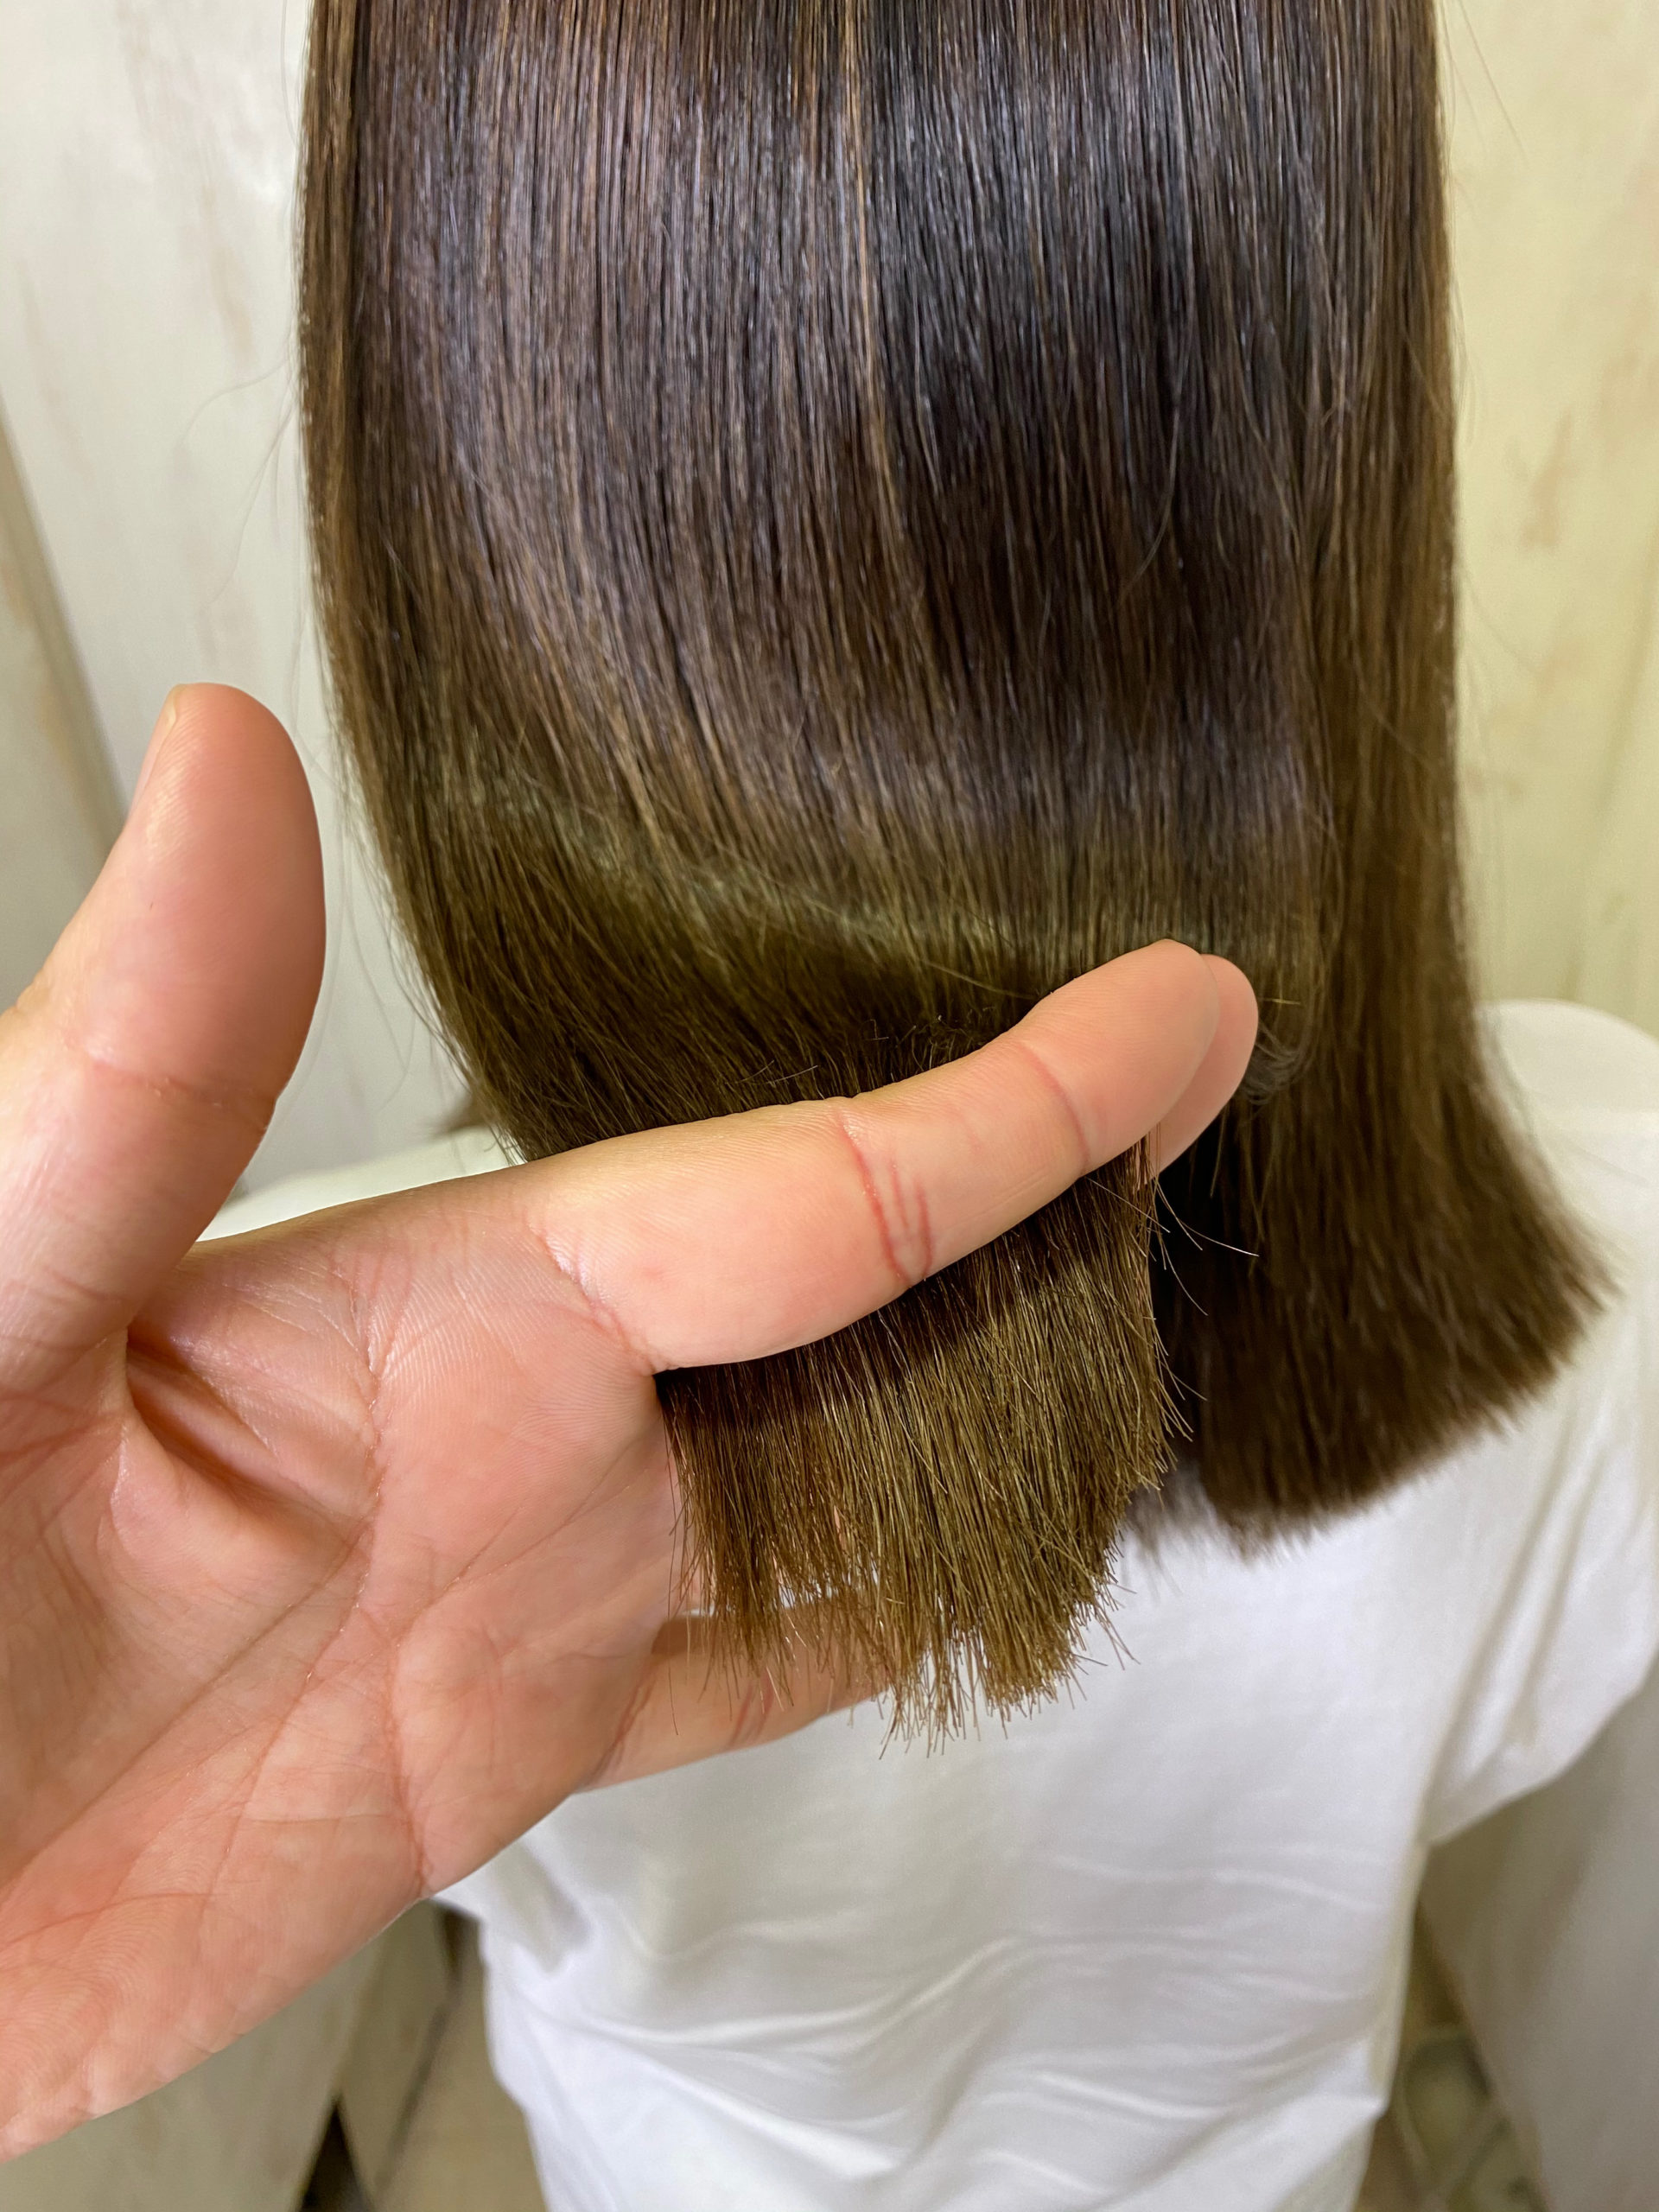 バレイヤージュカラー(ブリーチ)の方を縮毛矯正で艶髪ストレートヘア。原宿・表参道『髪のお悩みを解決するヘアケア美容師の挑戦』